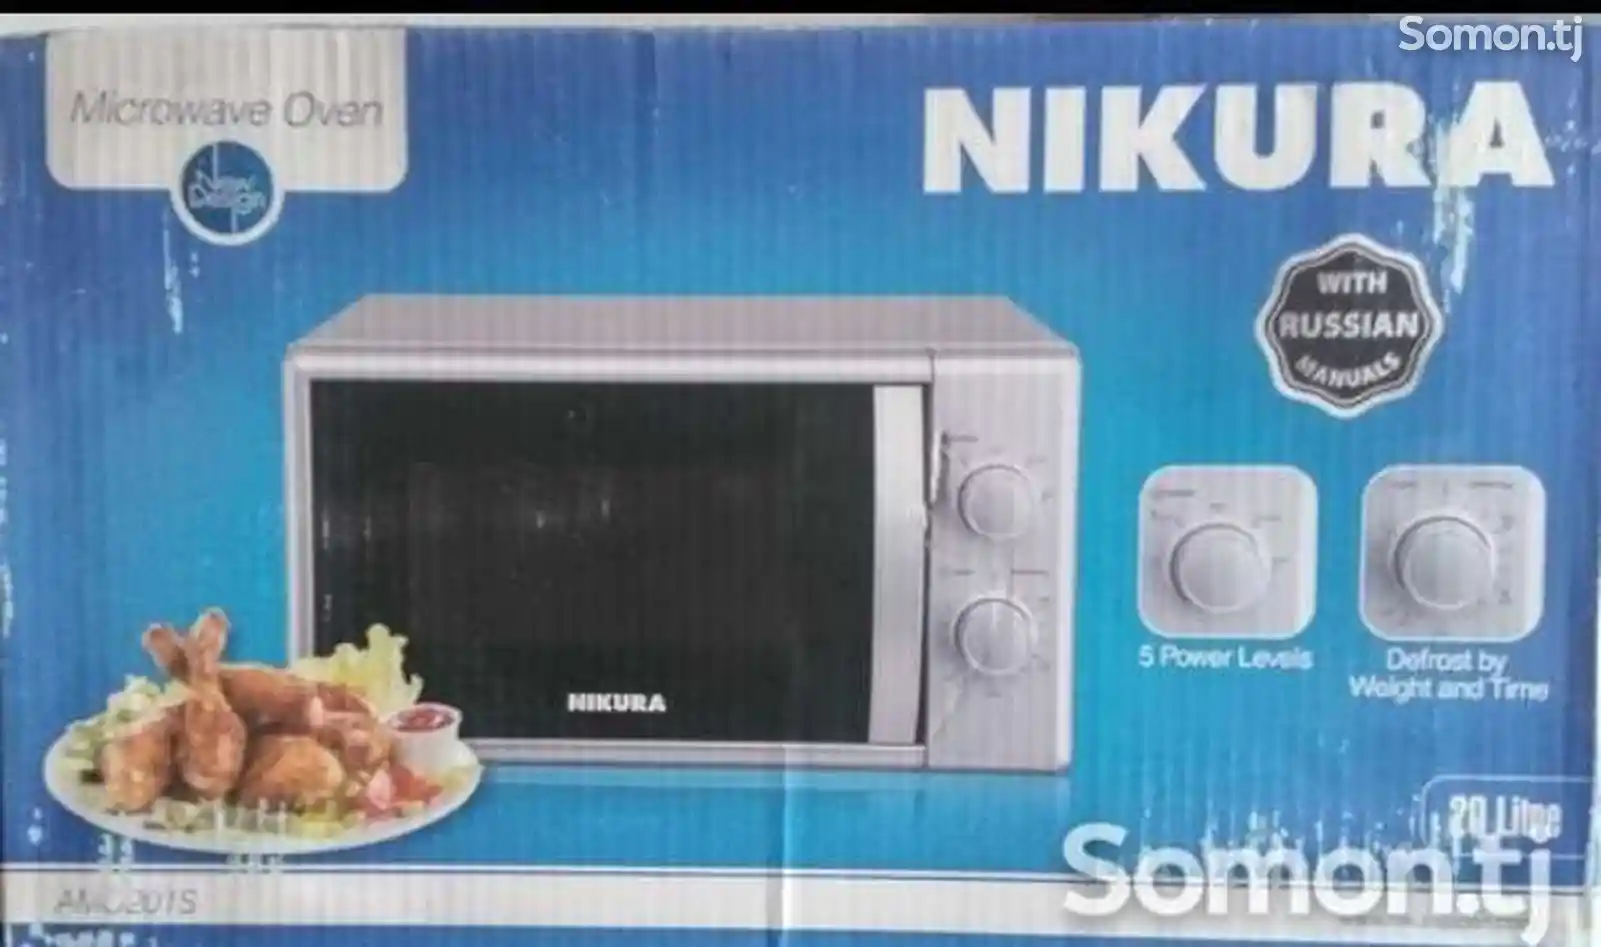 Микроволновая печь Nikura NK-60